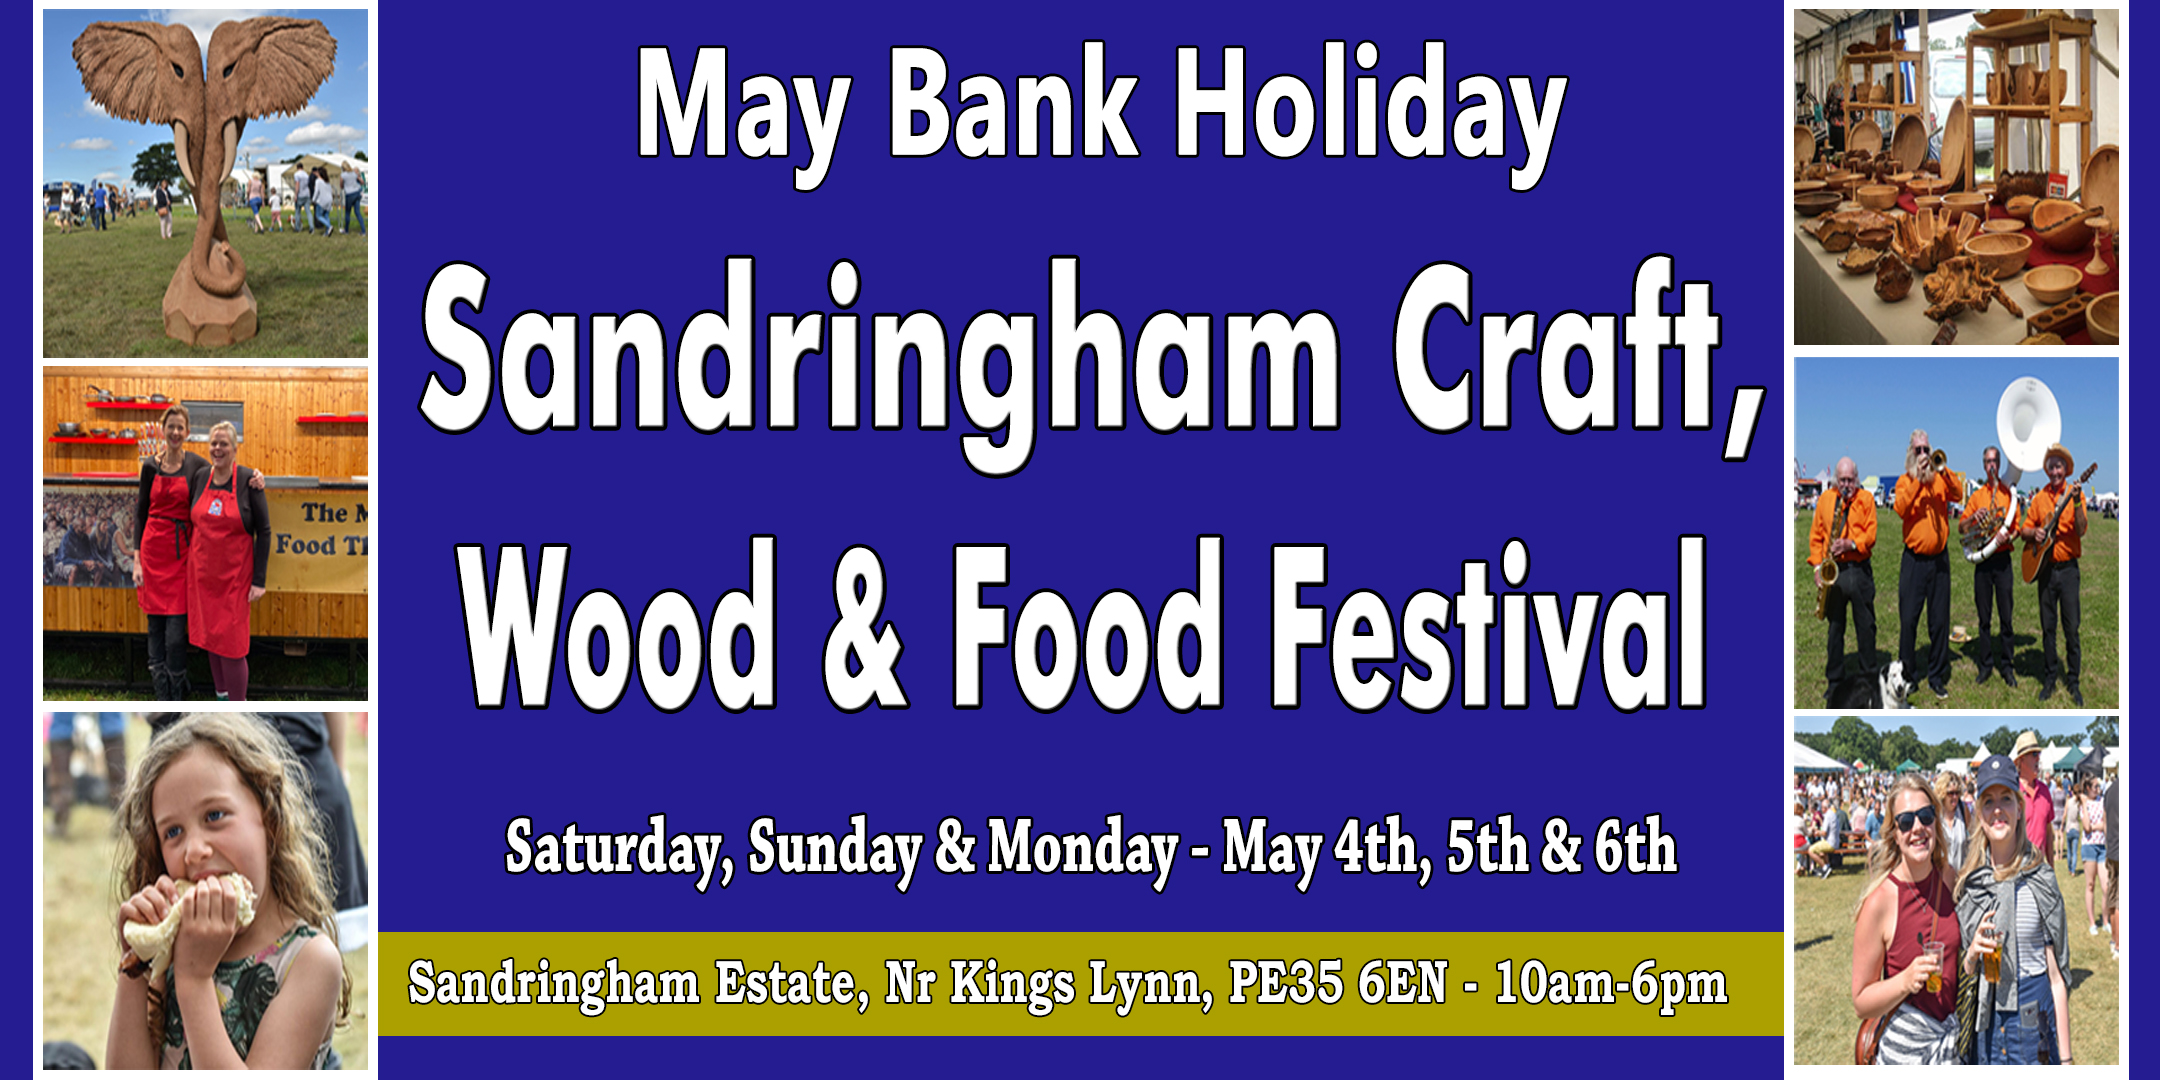 Sandringham Craft, Wood and Food Festival